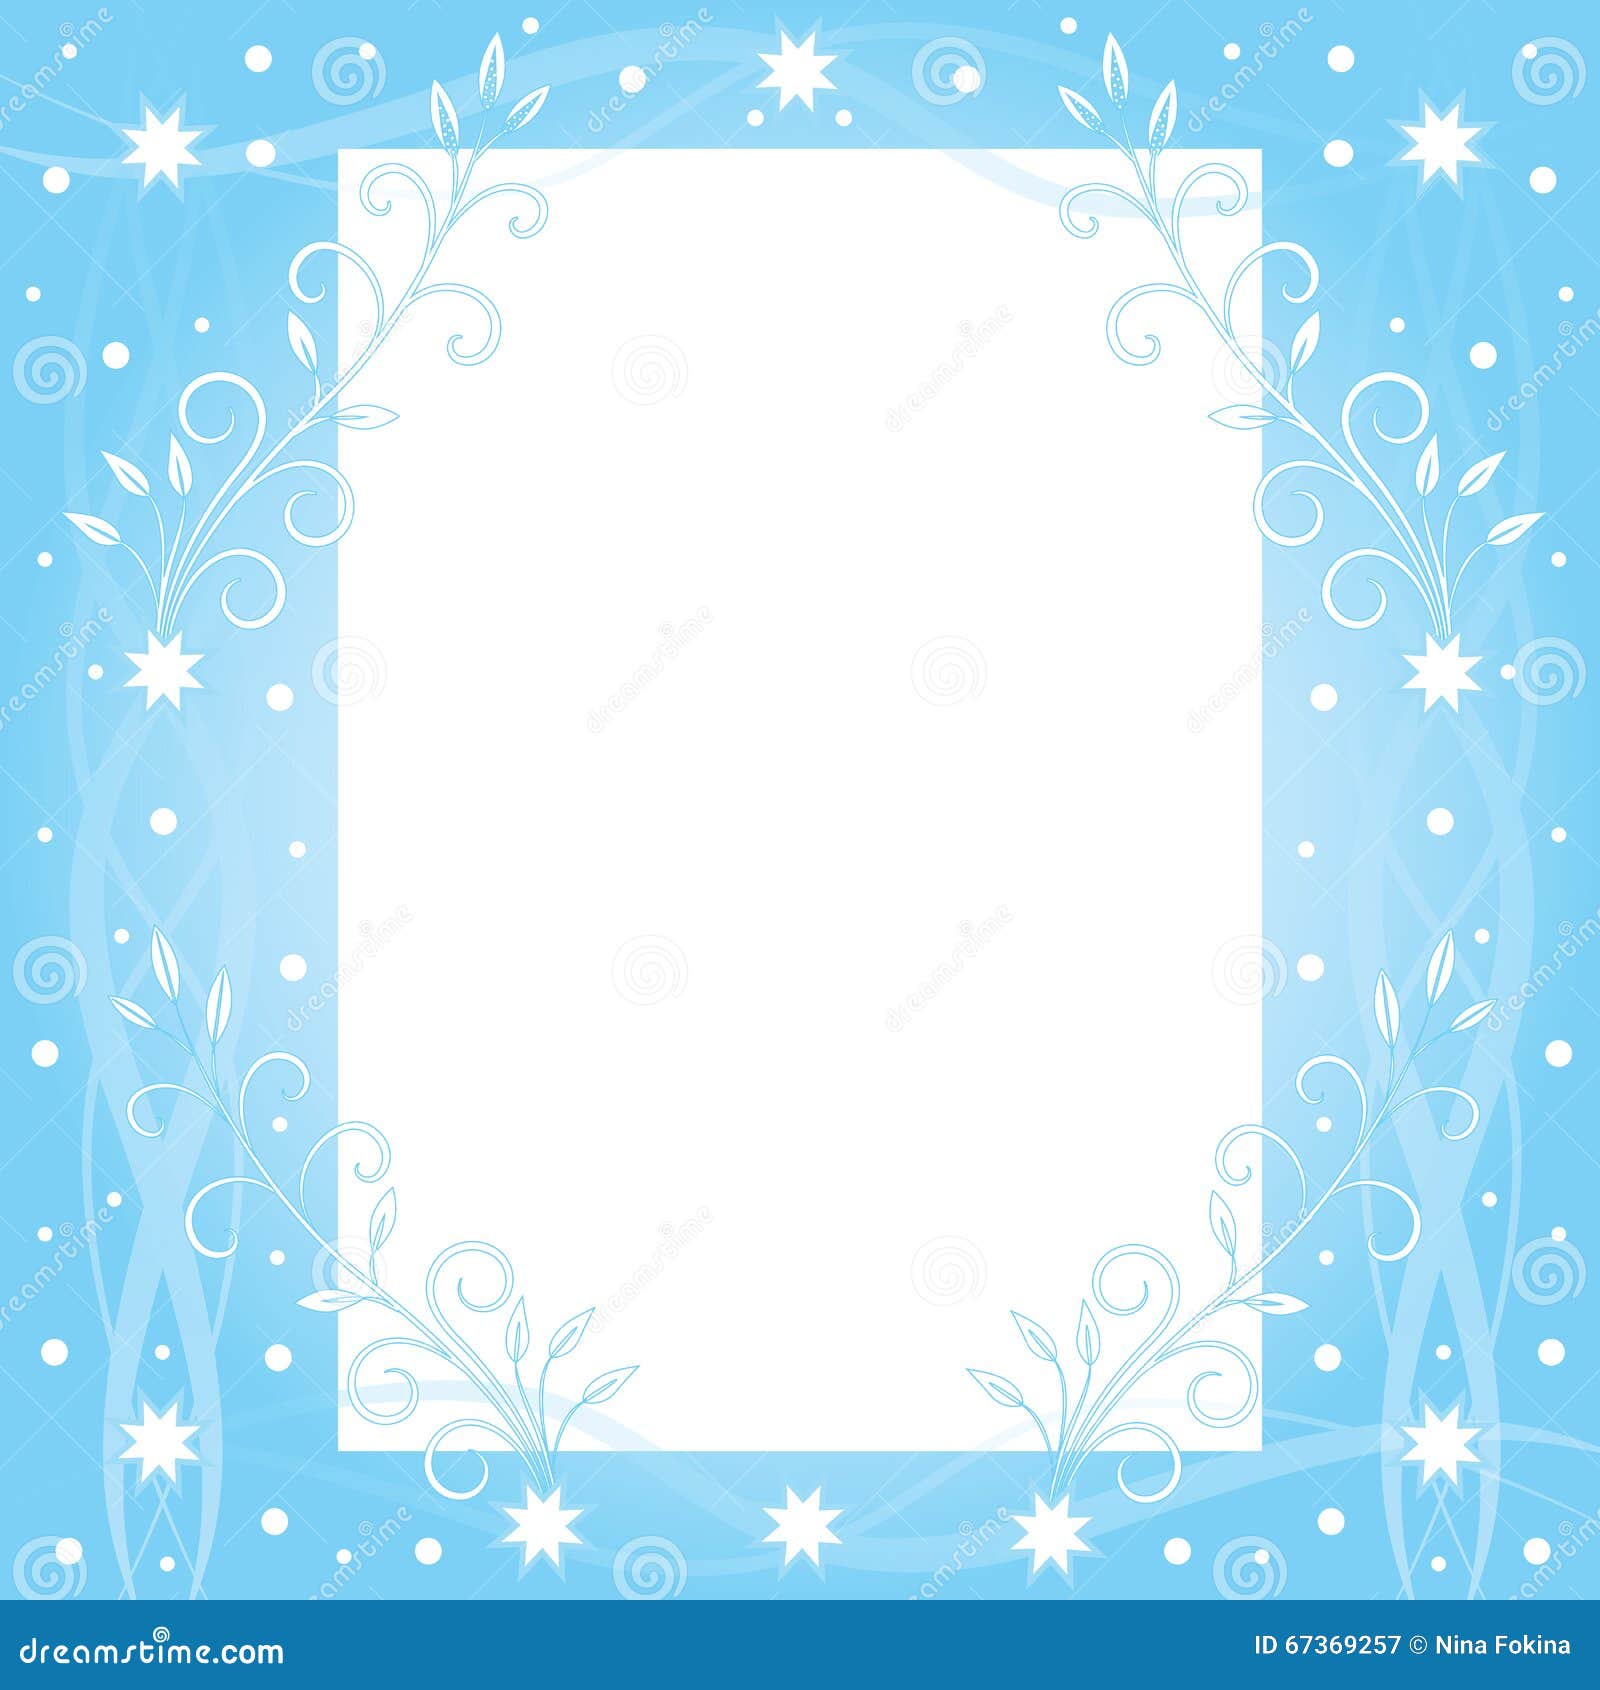 冬天梦想向量例证 插画包括有空间 模式 天空 形状 邀请 框架 看板卡 庆祝 星形